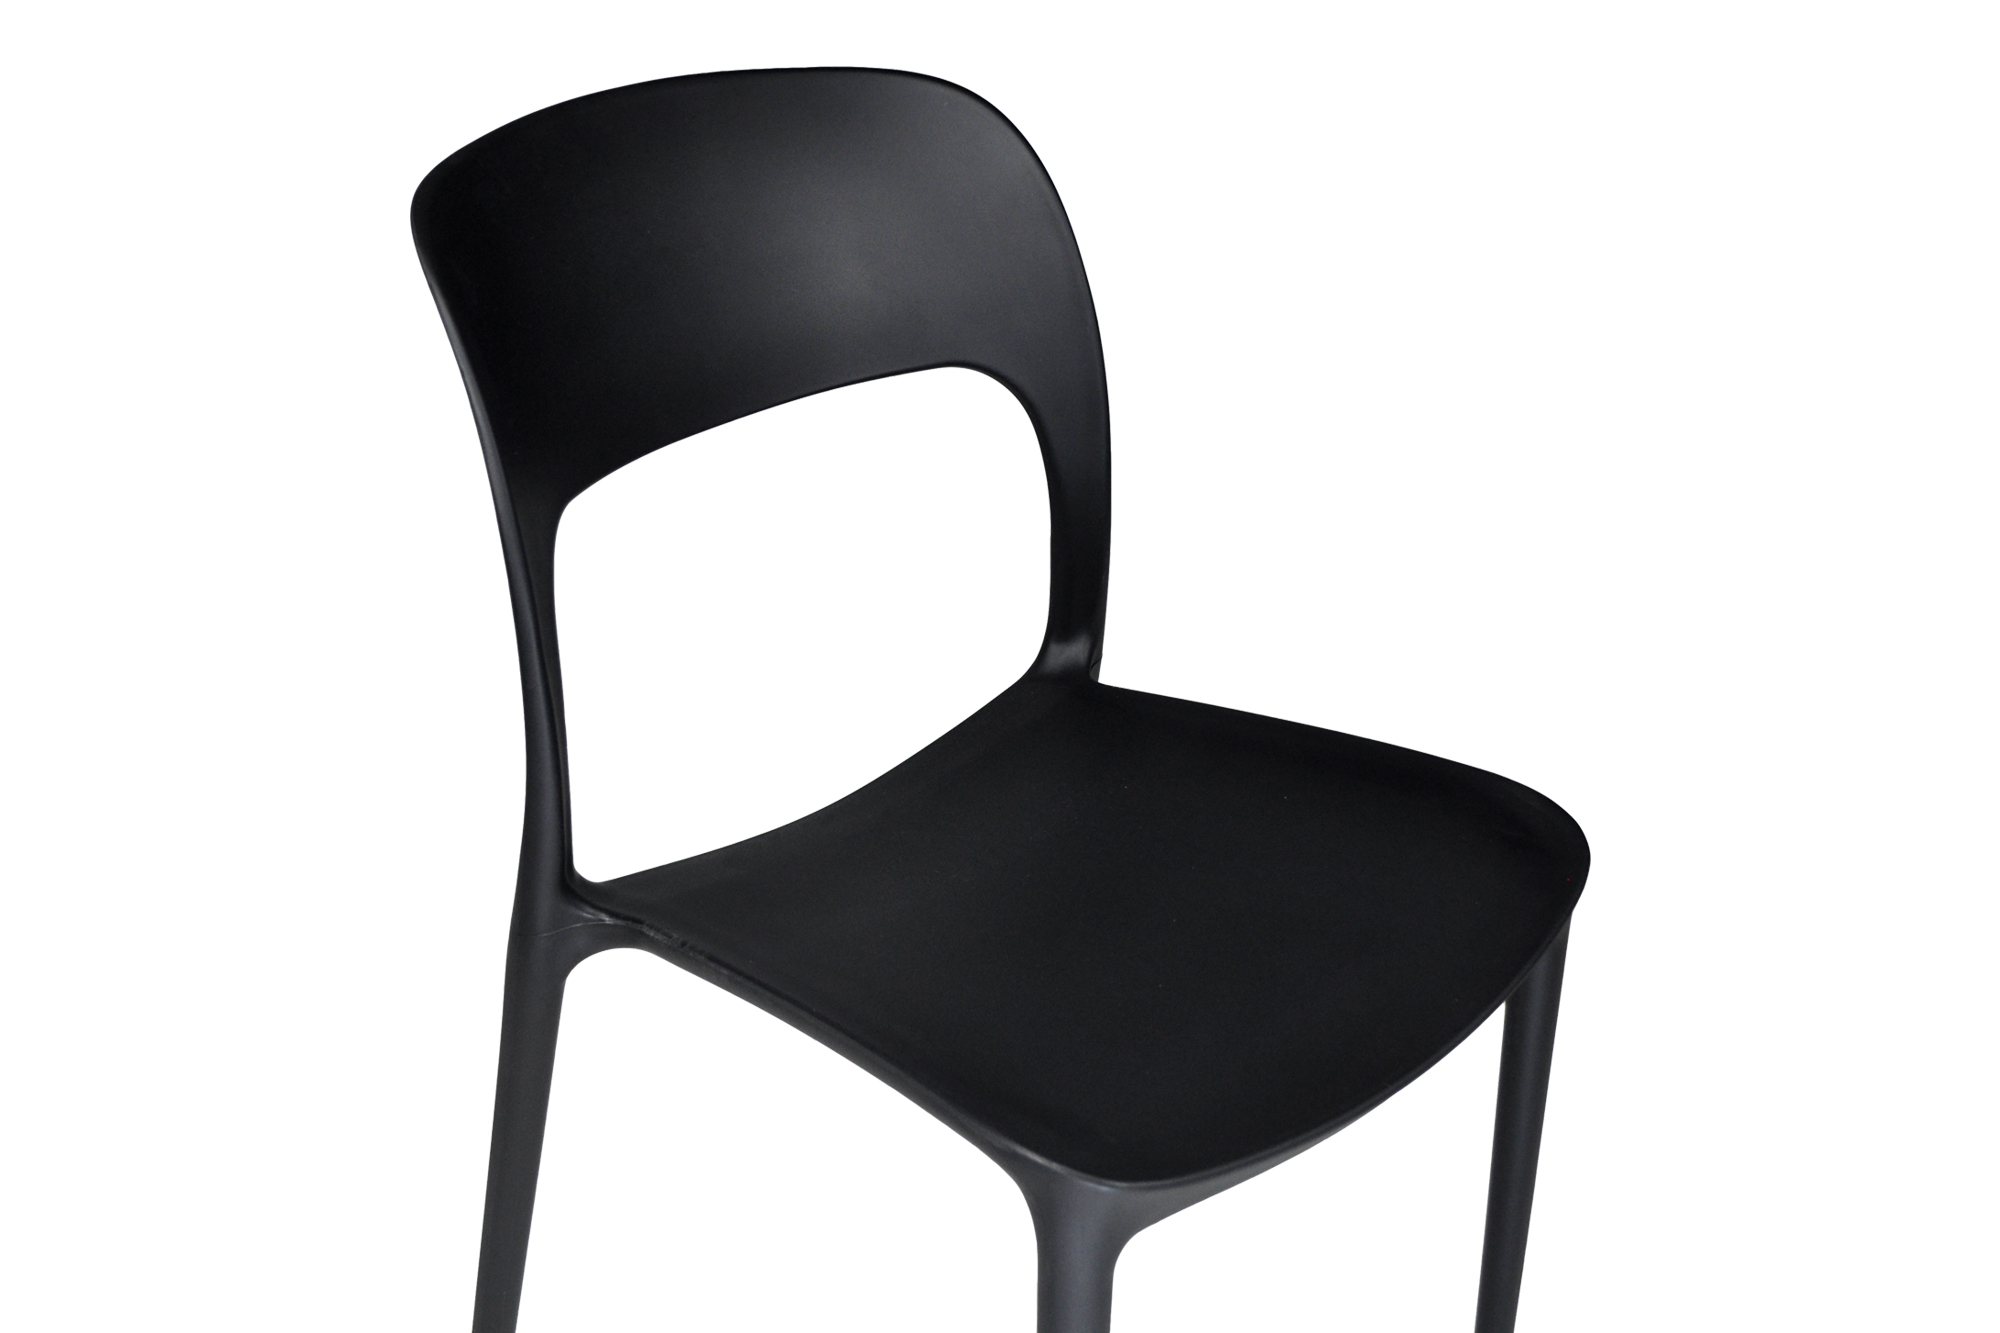 mya black è la sedia per uffcio ideale da inserire nella propria casa.